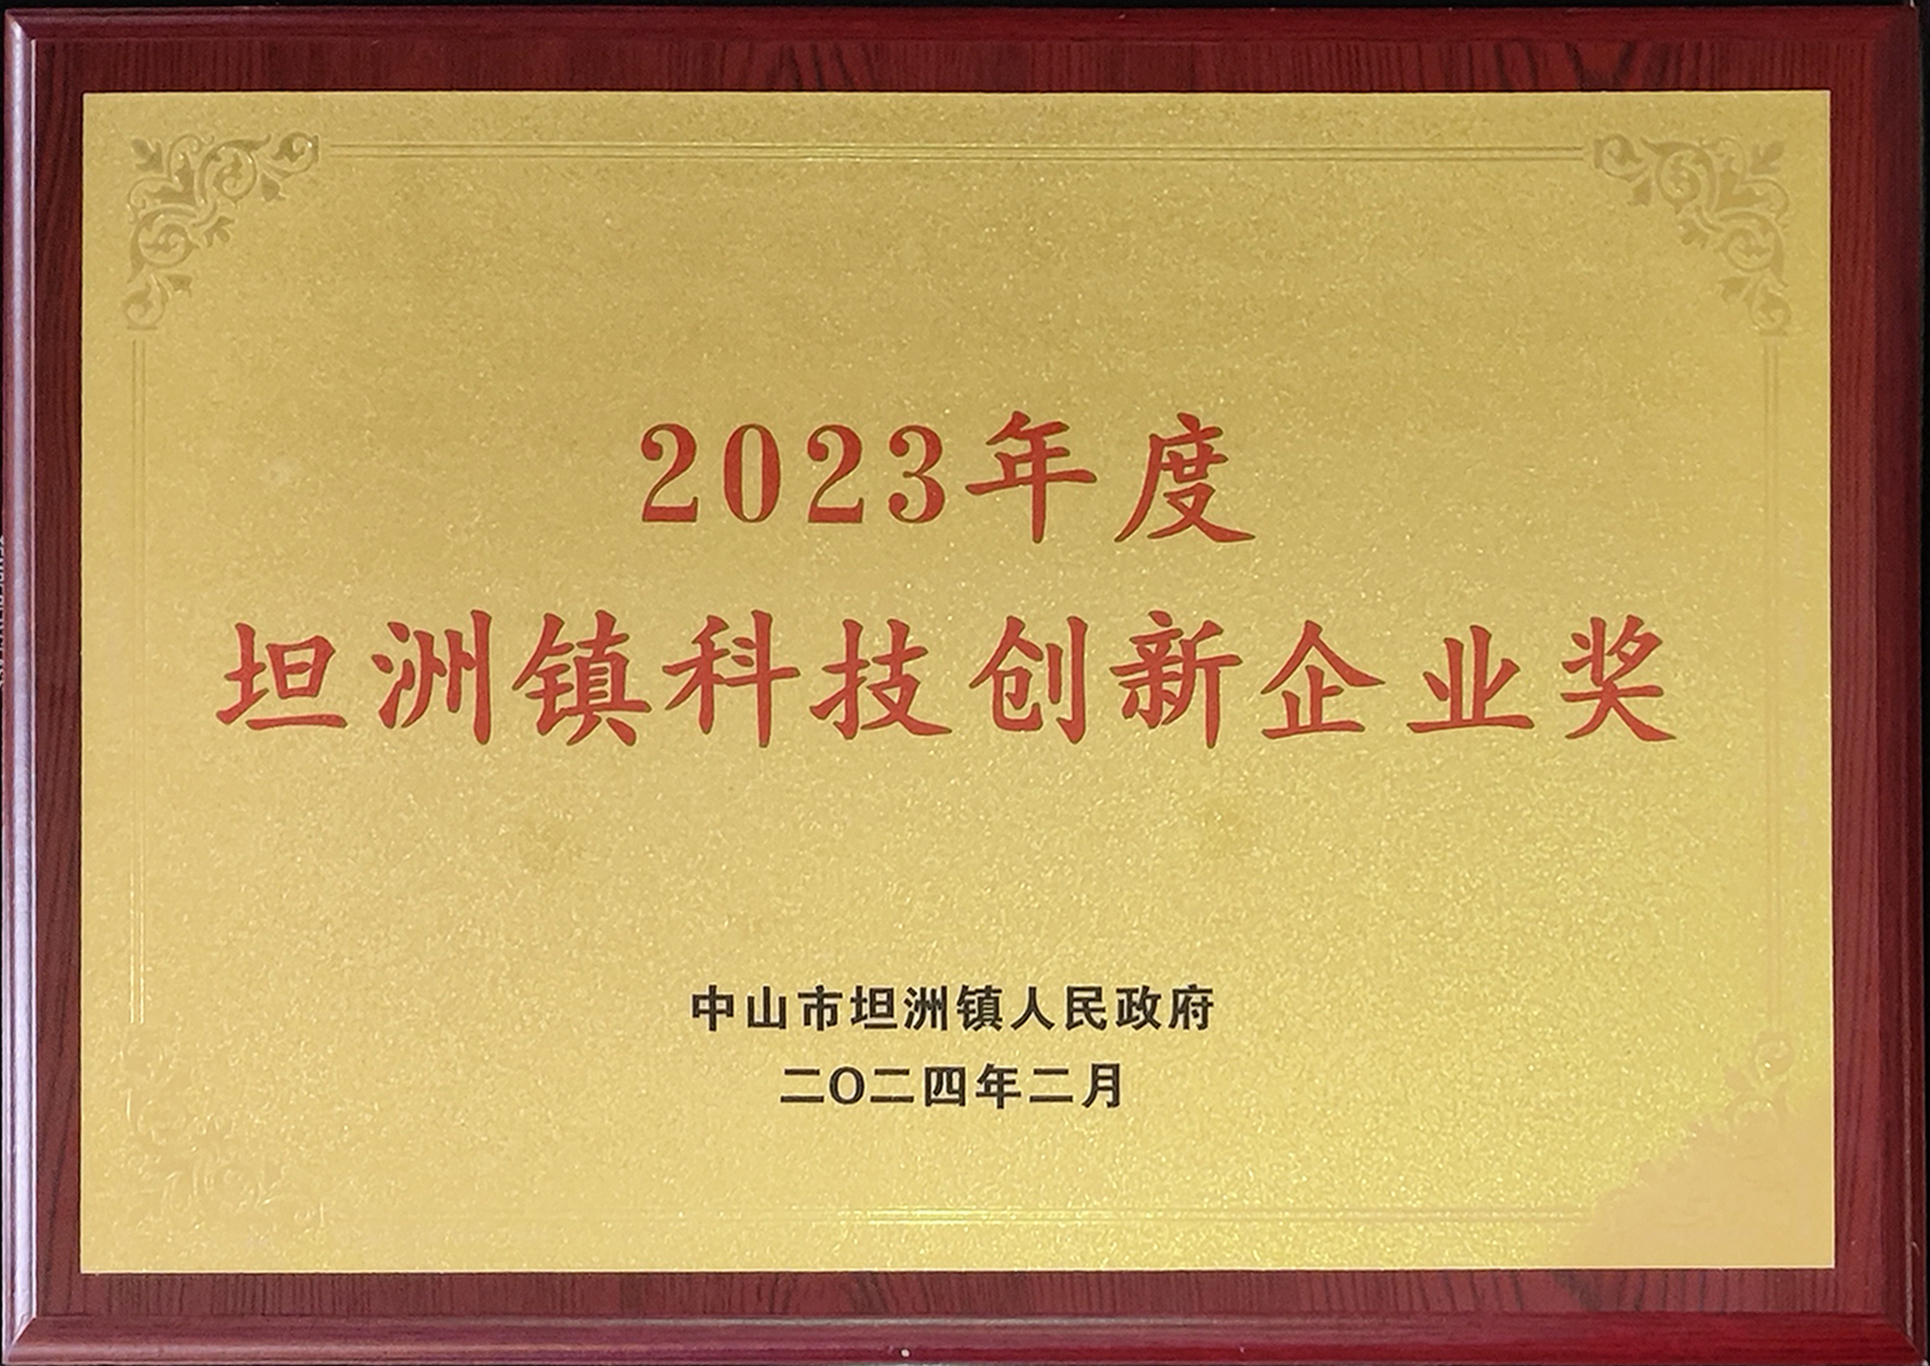 我司荣获“2023年度坦洲镇科技创新企业奖”！